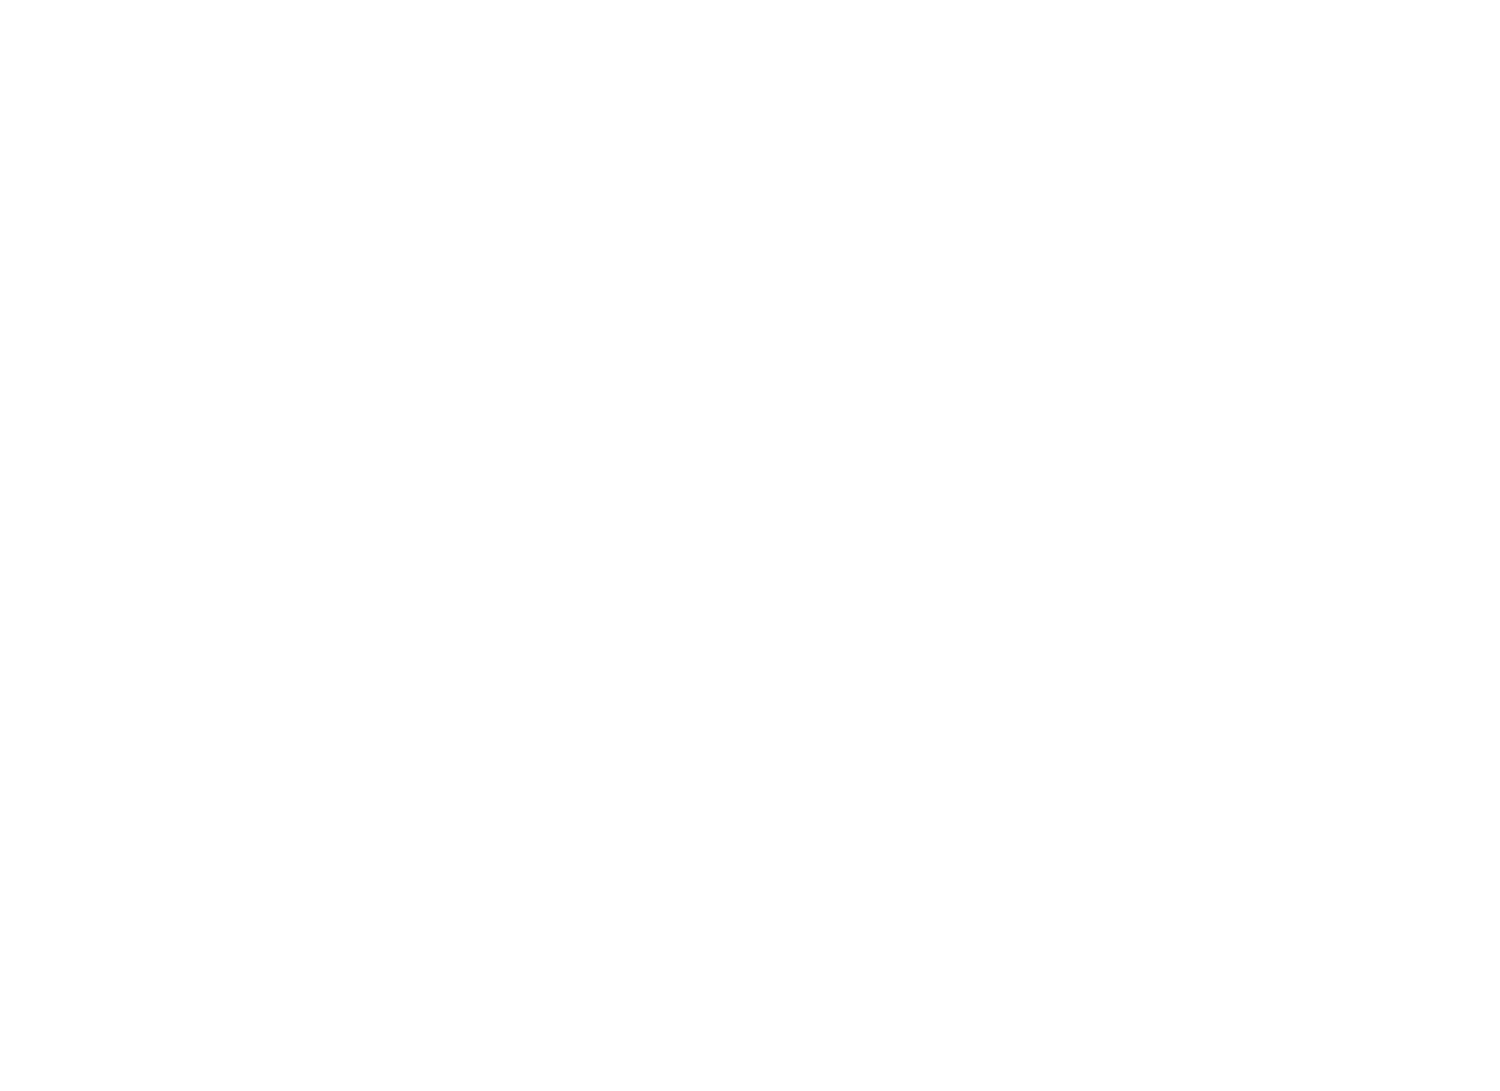 Artflower